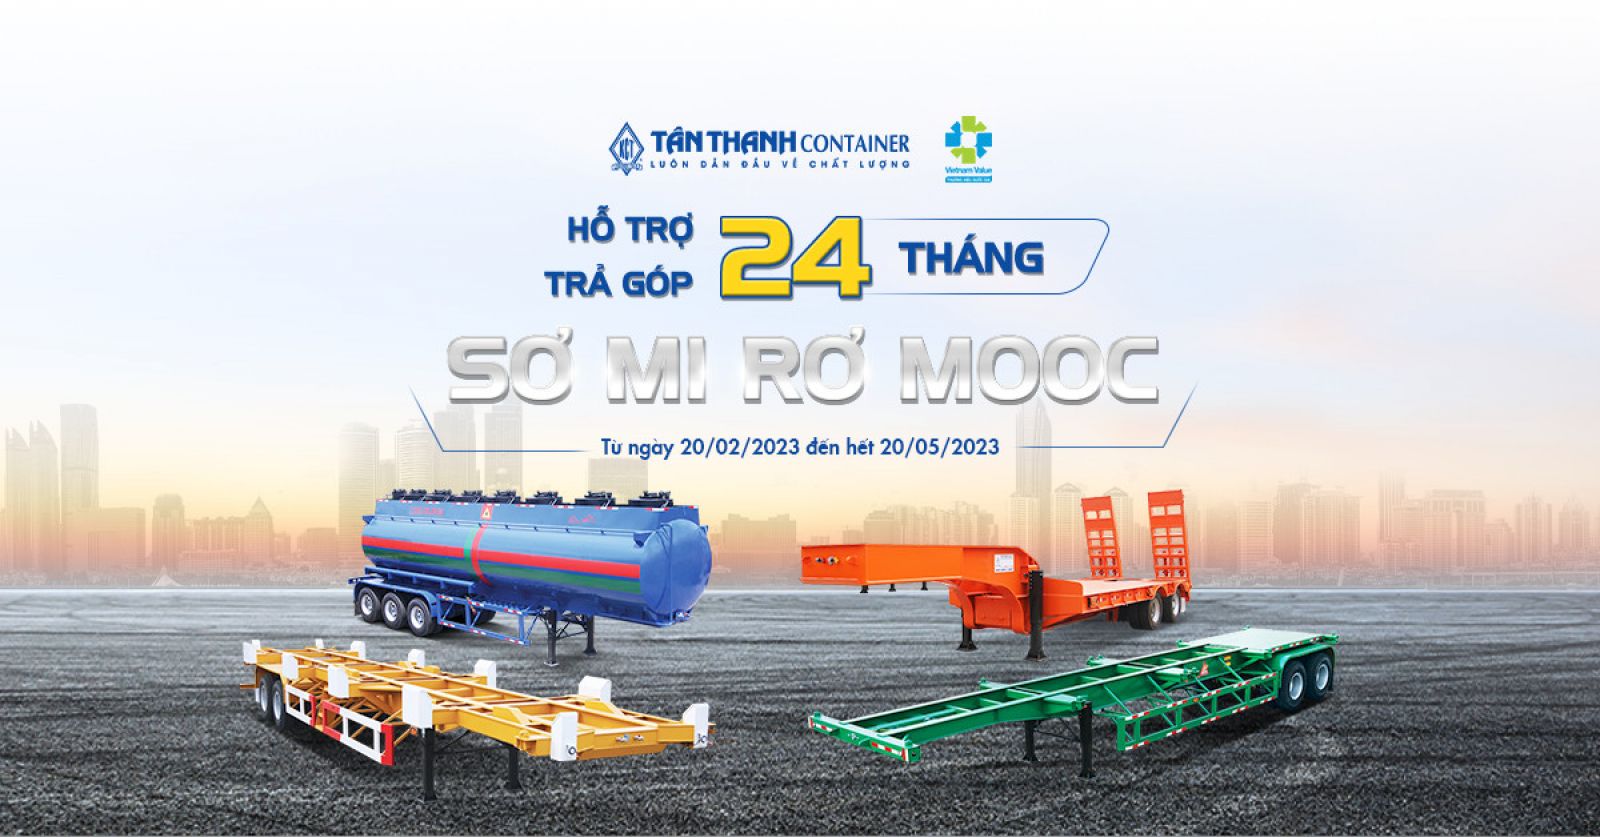 Tân Thanh Container | Mua bán cho thuê Container, Sơ mi rơ mooc